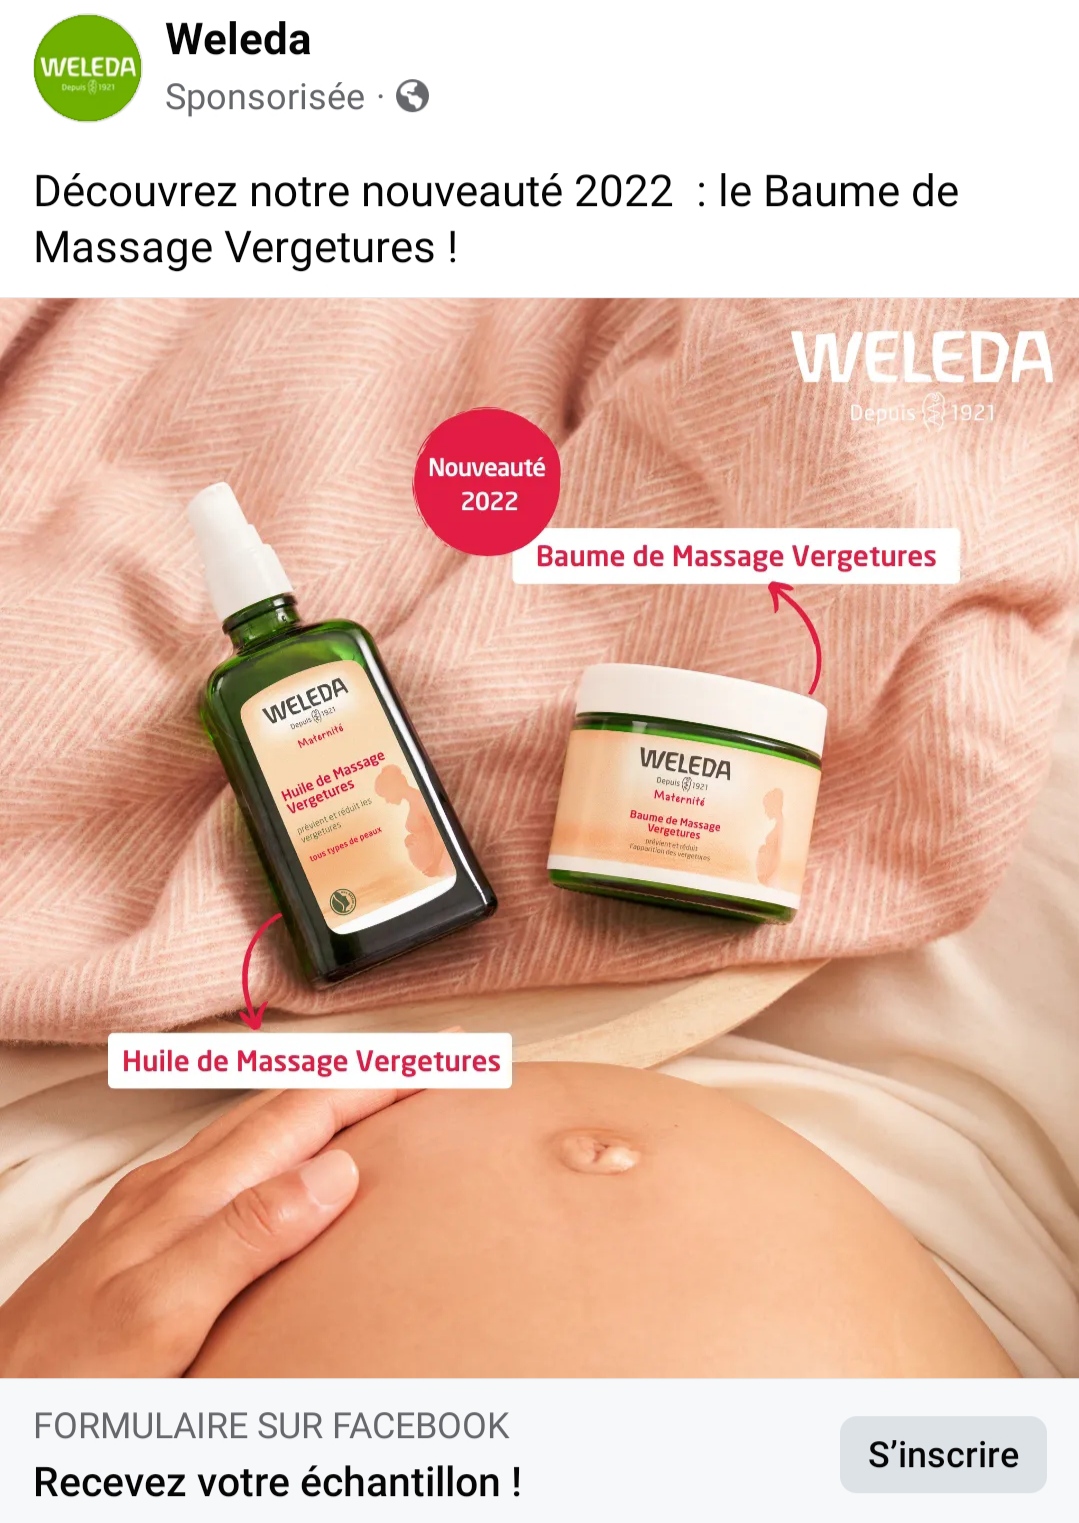 Baume de Massage Vergetures Weleda